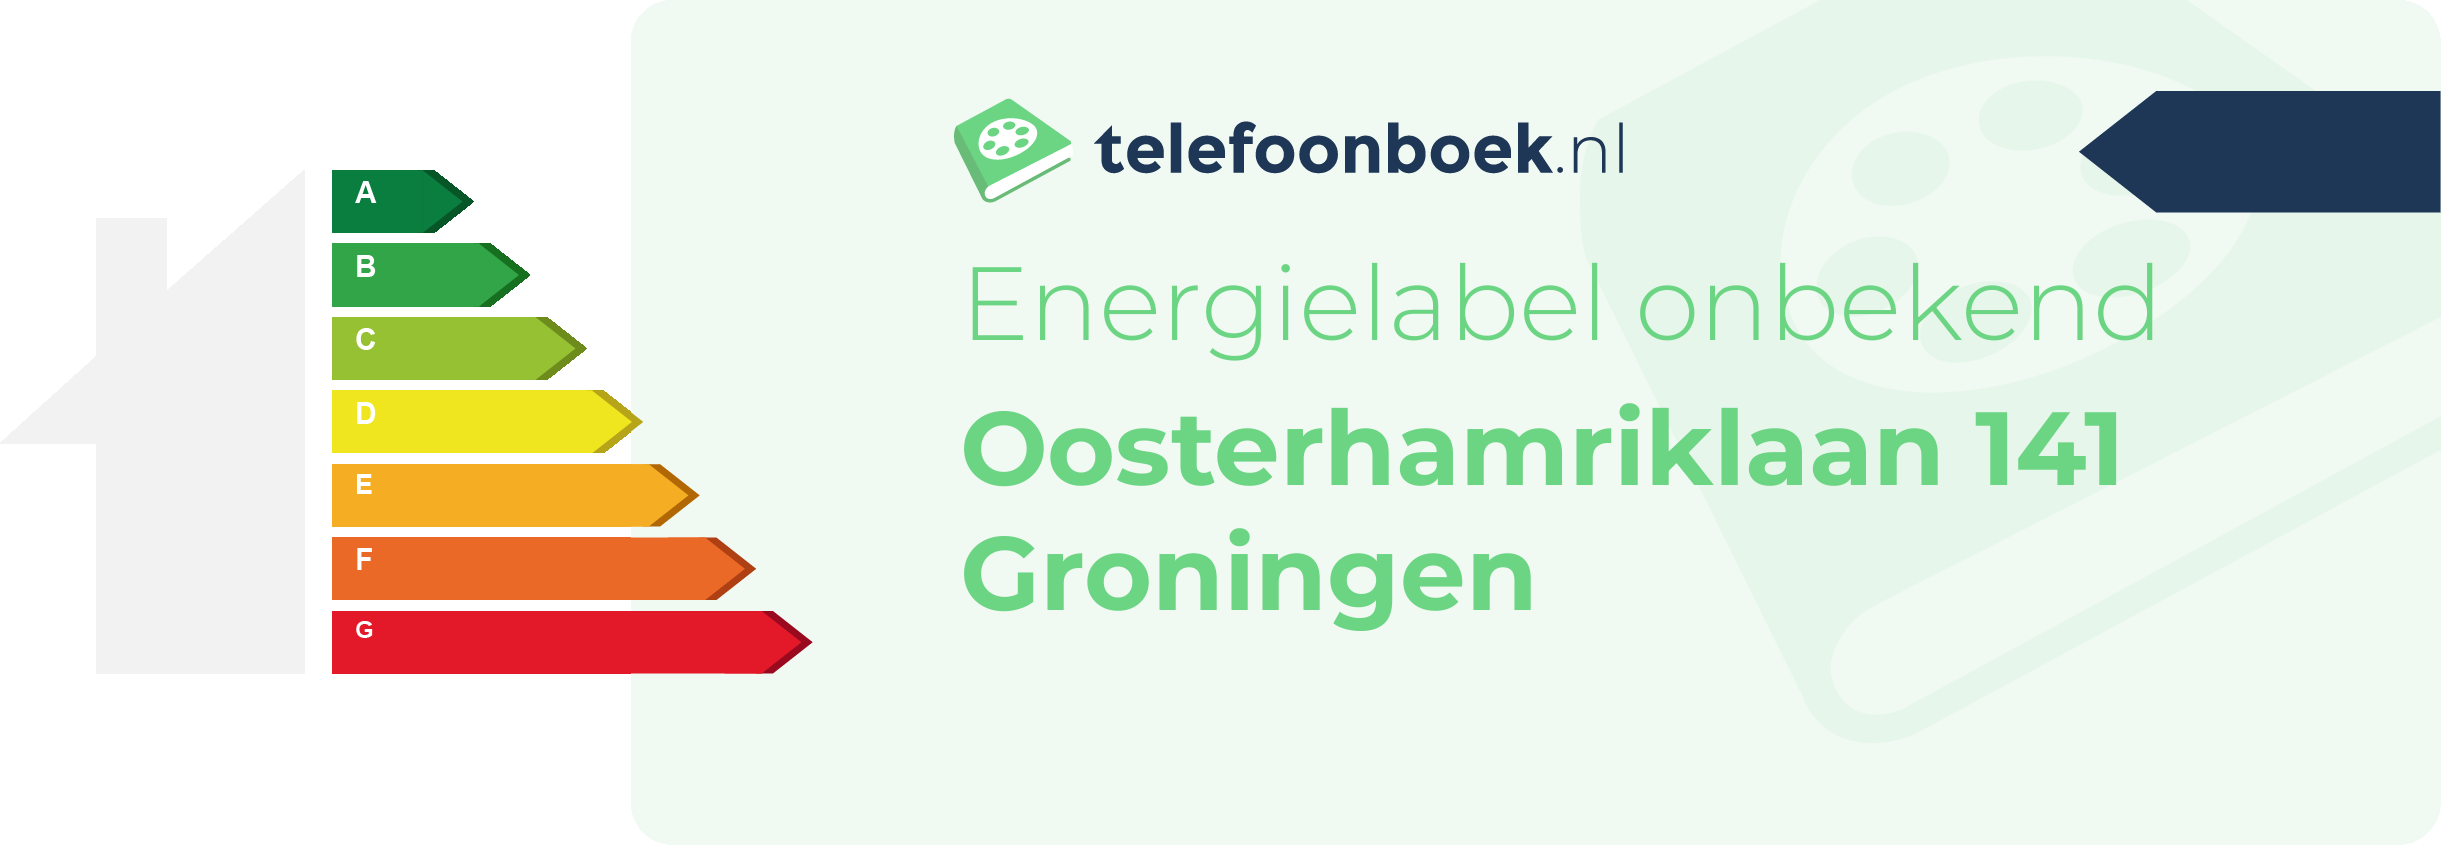 Energielabel Oosterhamriklaan 141 Groningen